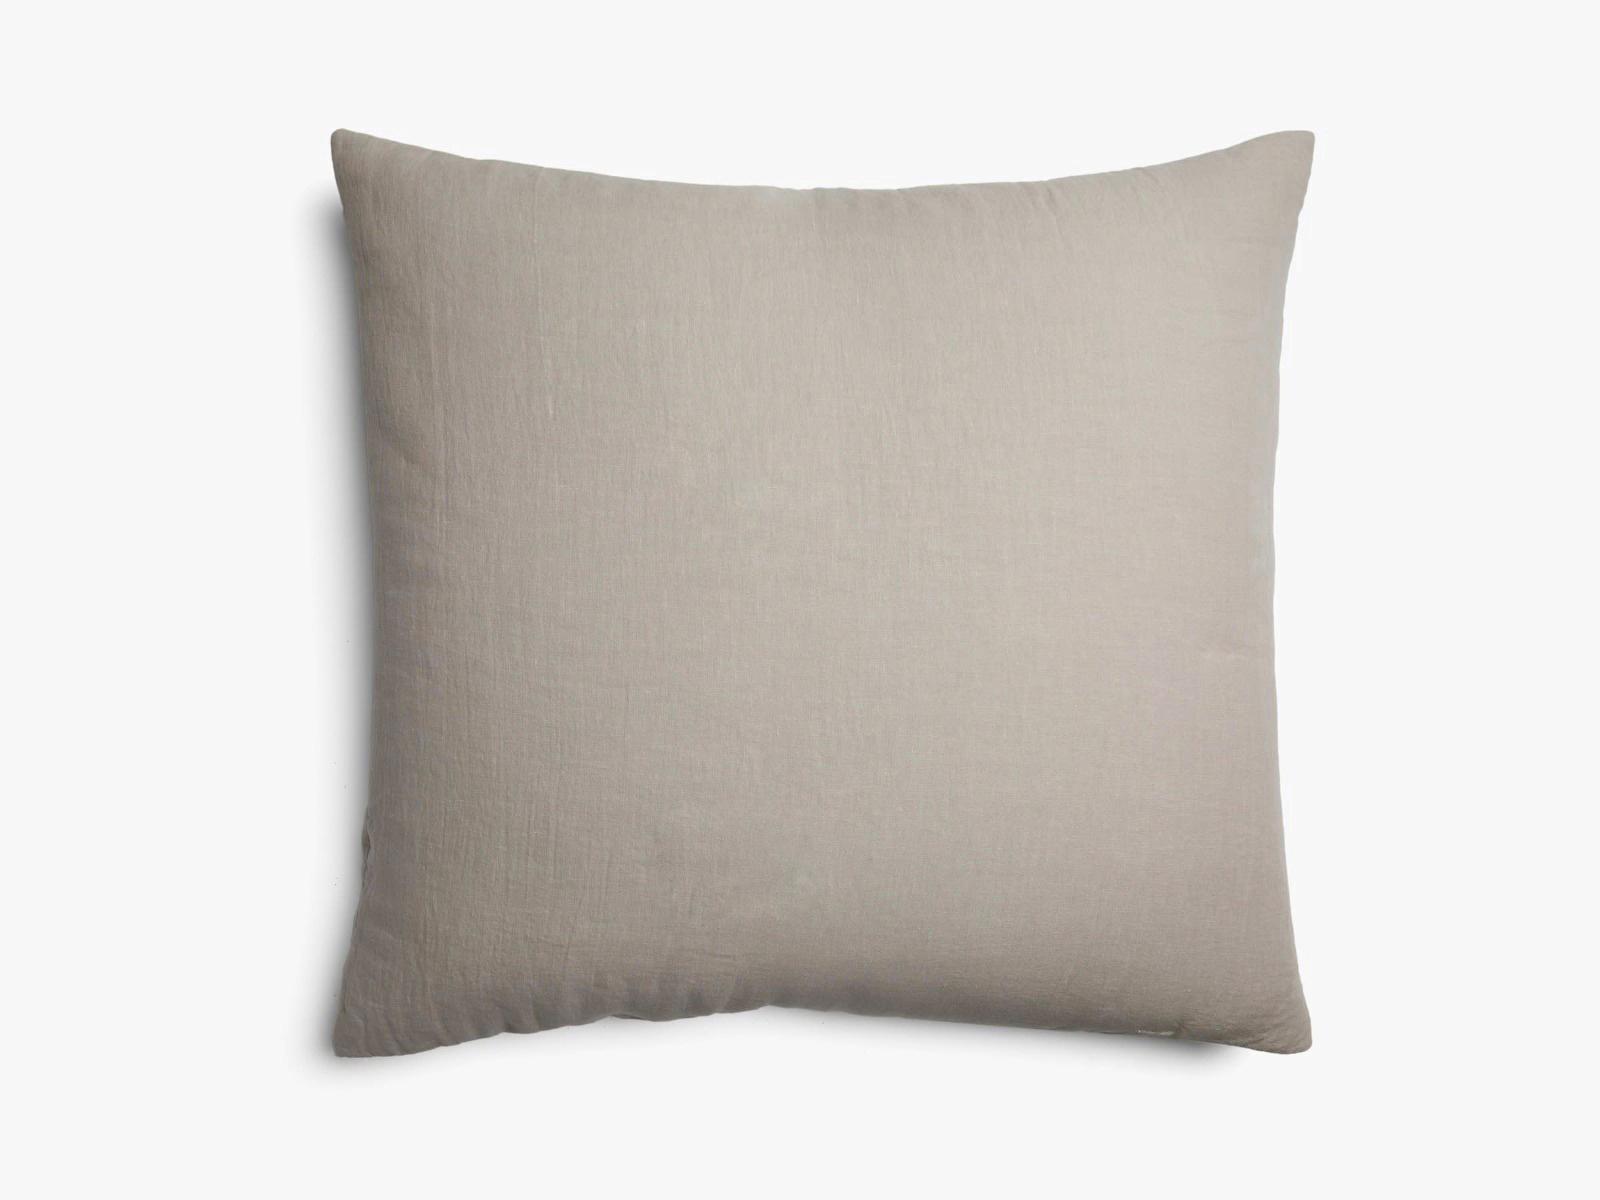 Allure Muslin Cotton 60x60 cm Decorative Mattress Throw Pillow Cover Light Brown